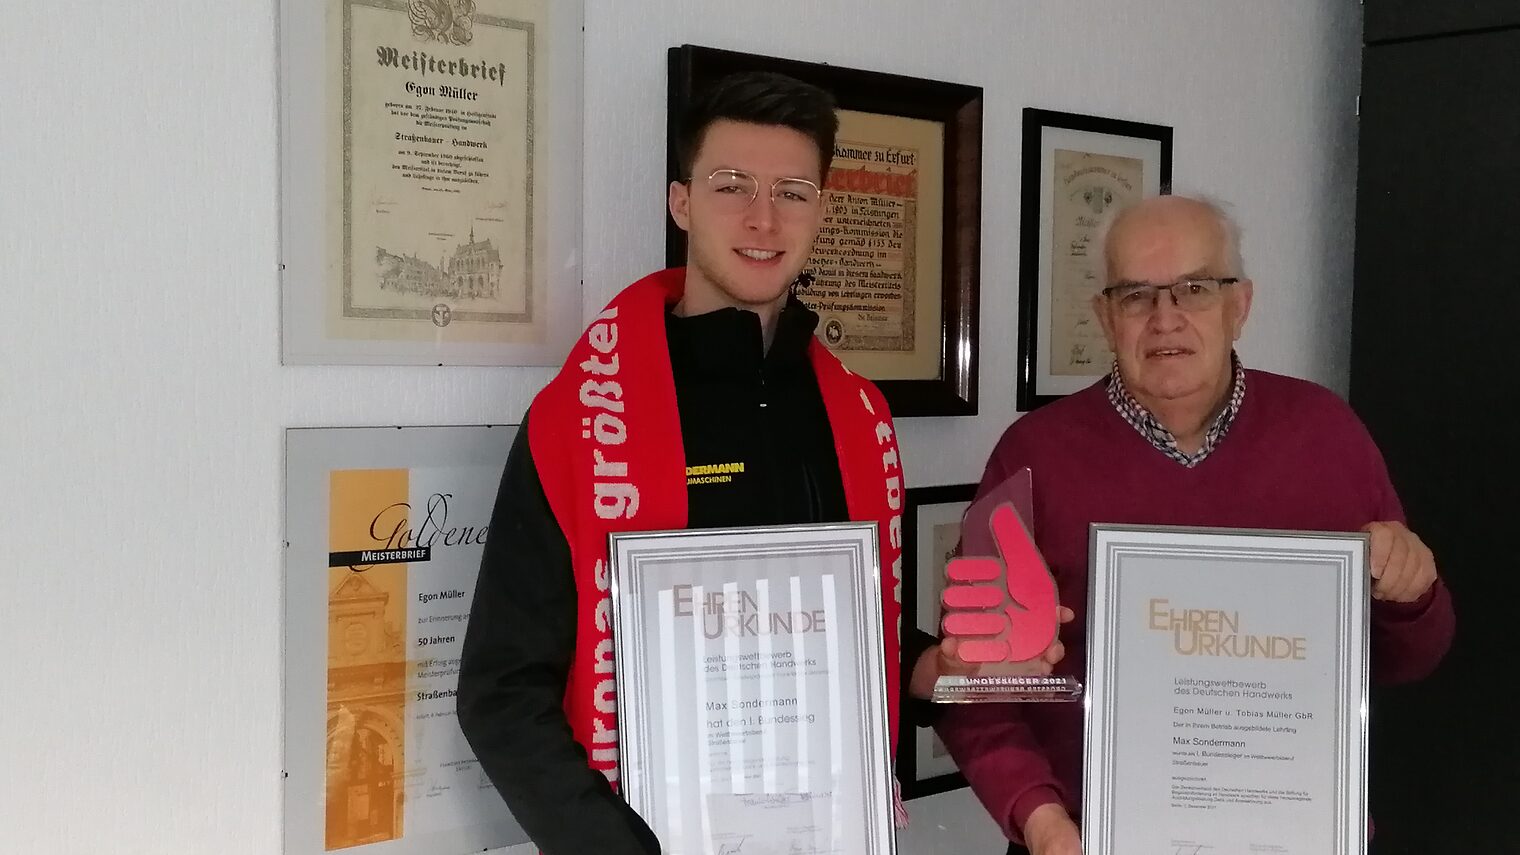 Großer Erfolg: Max Sondermann ist der 1. Bundessieger im Ausbildungs-beruf Straßenbauer. Gemeinsam mit seinem Ausbildungsbetreuer Egon Müller nahm er den Pokal und die Urkunde entgegen.